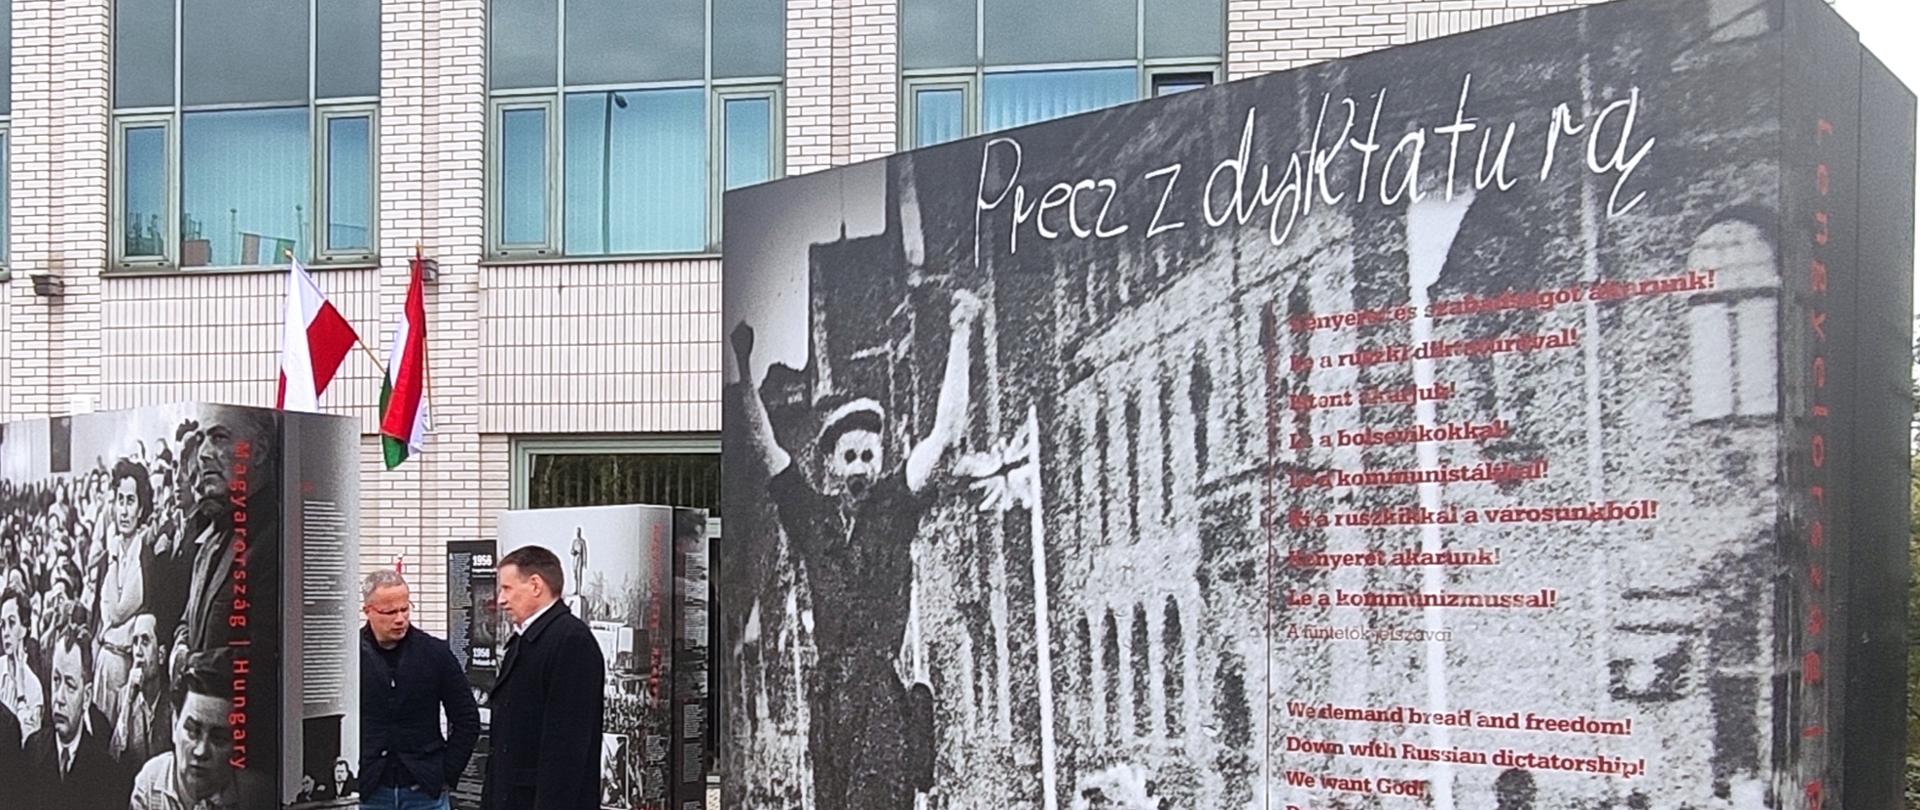 "1956 Lengyelország - Magyarország. Történelem és emlékezet" címu kiállítása Budapesten (2022. október 21.)